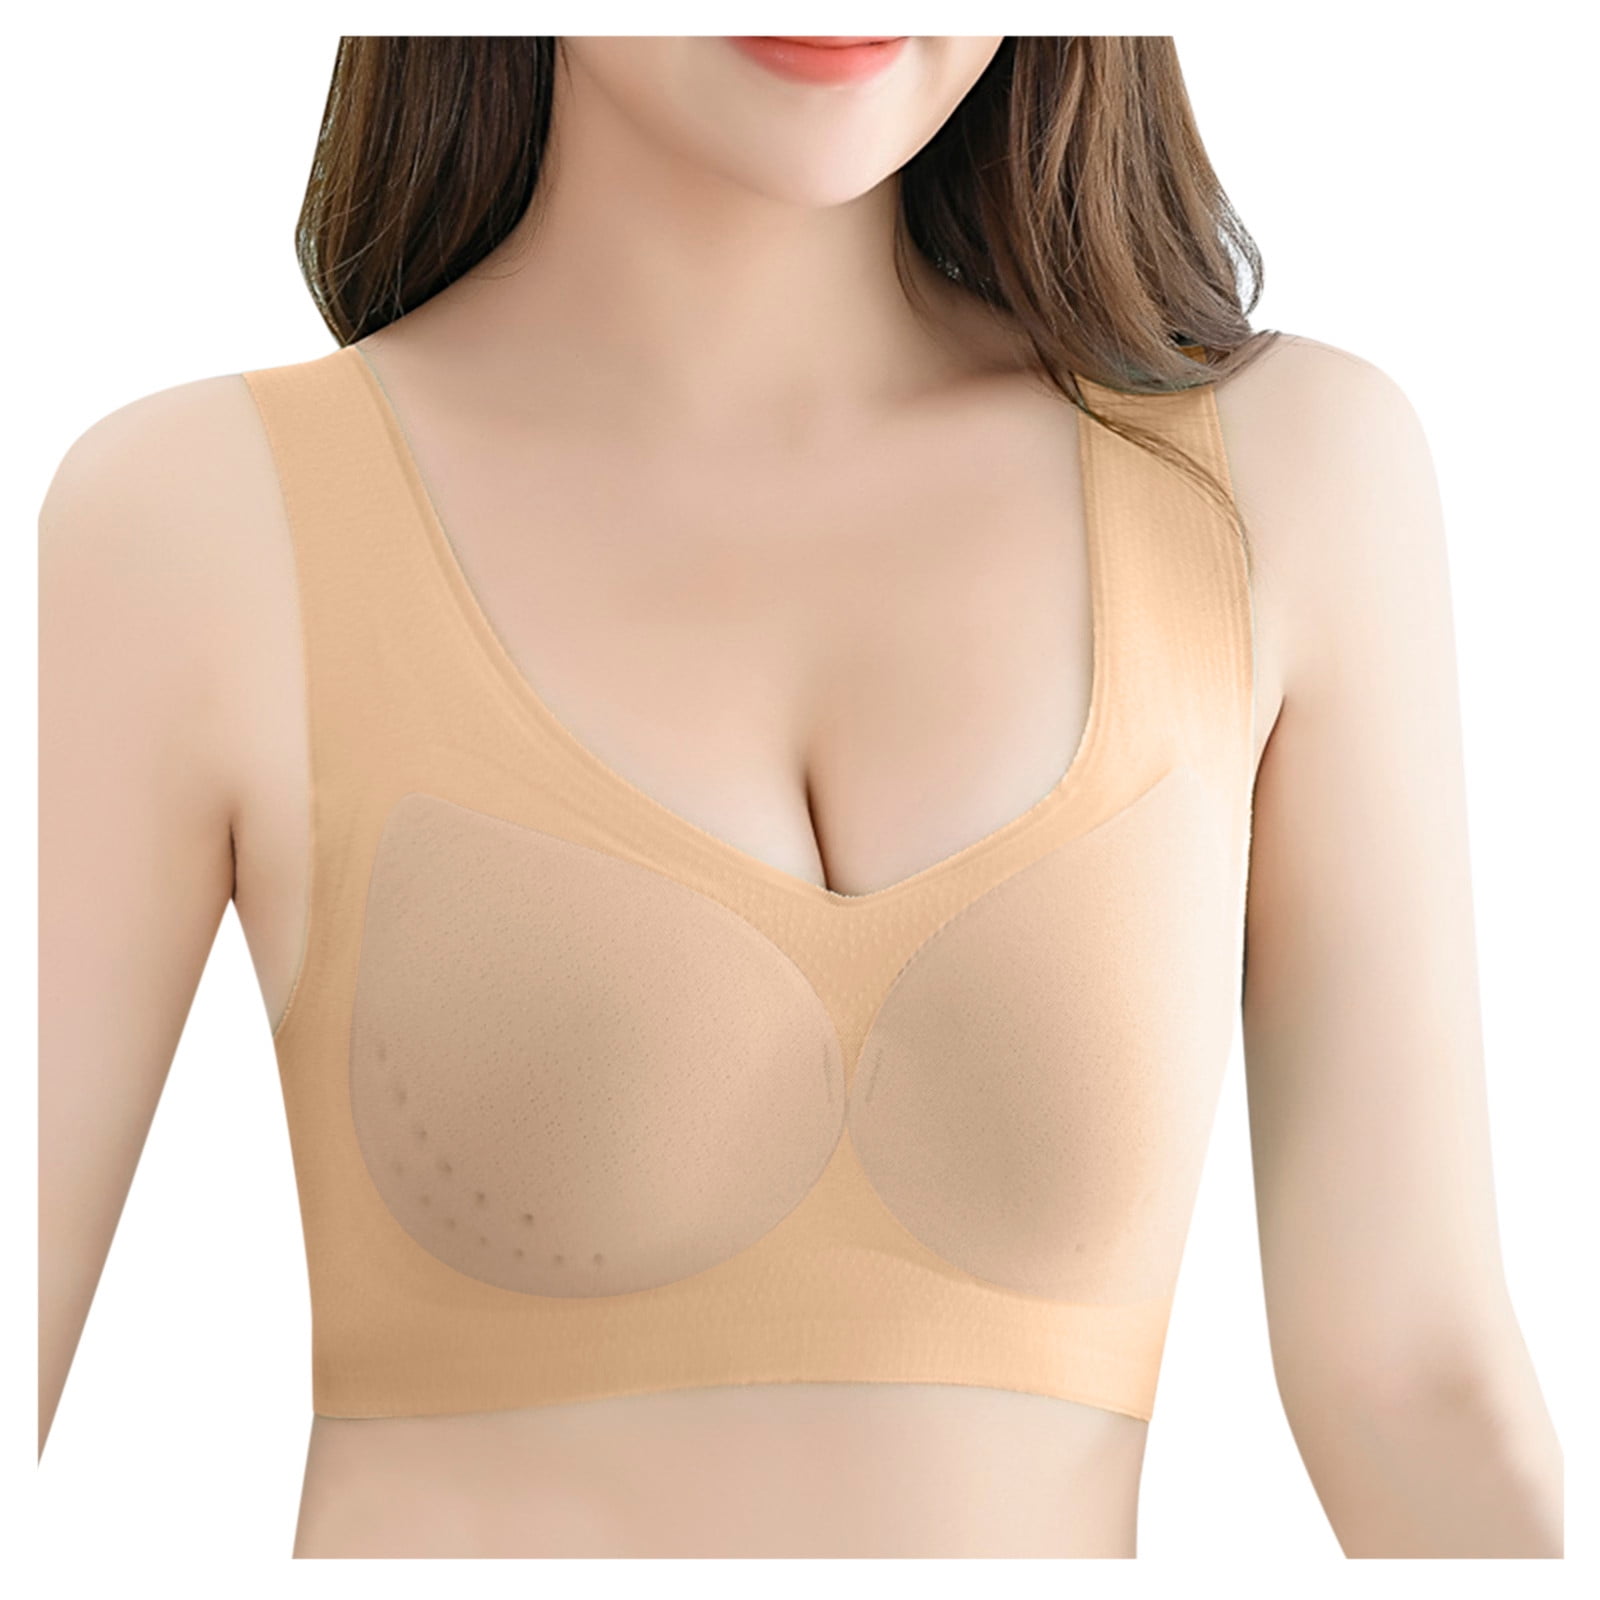 MRULIC bras for women Low Cut Bra For Womens Unlined Plus Size Bra